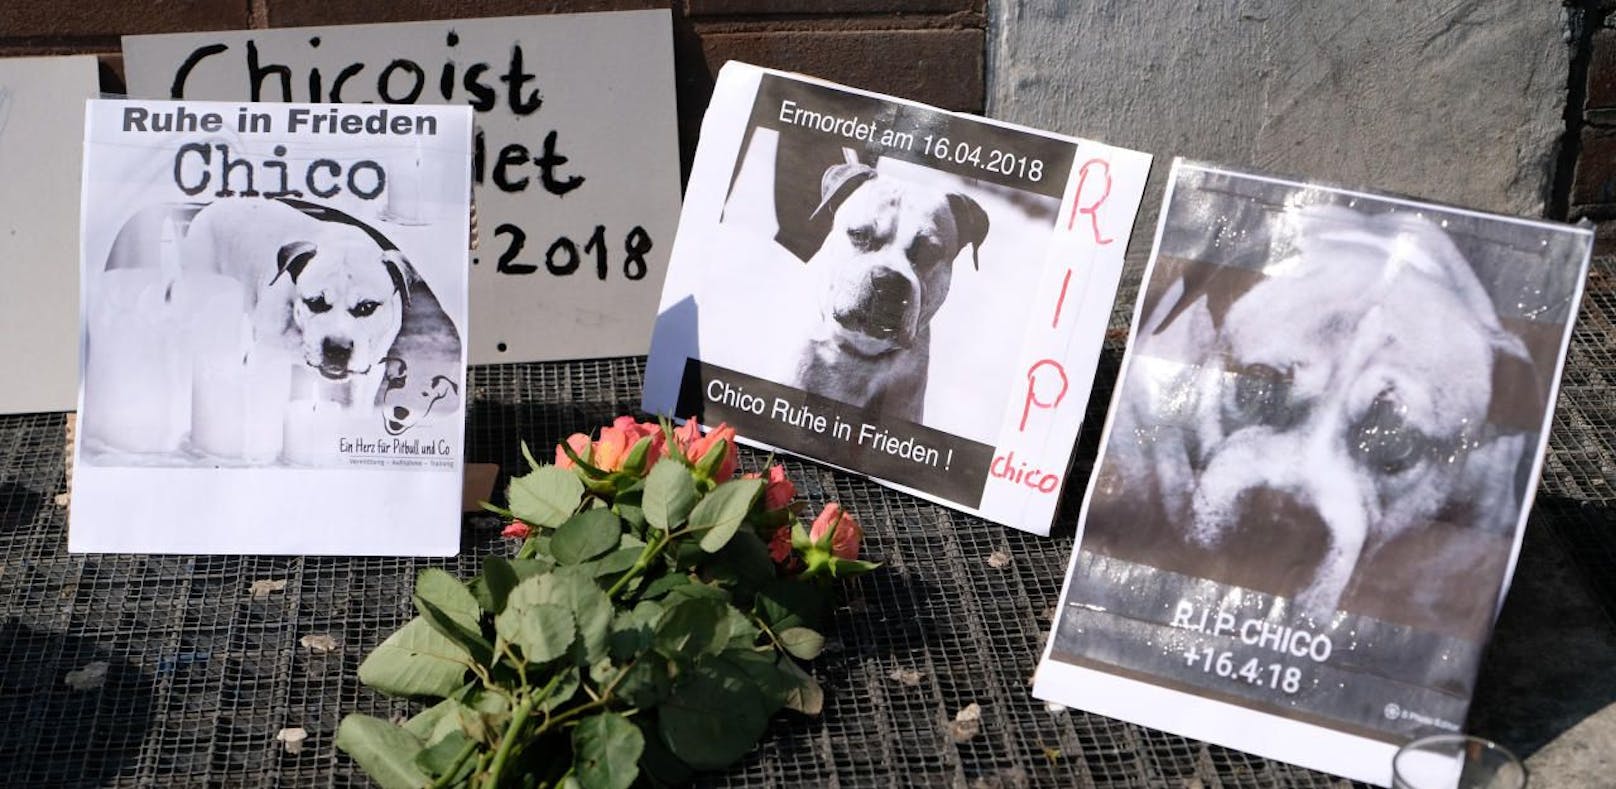 Mahnwache für Killerhund: "Unser Freiheitskämpfer"